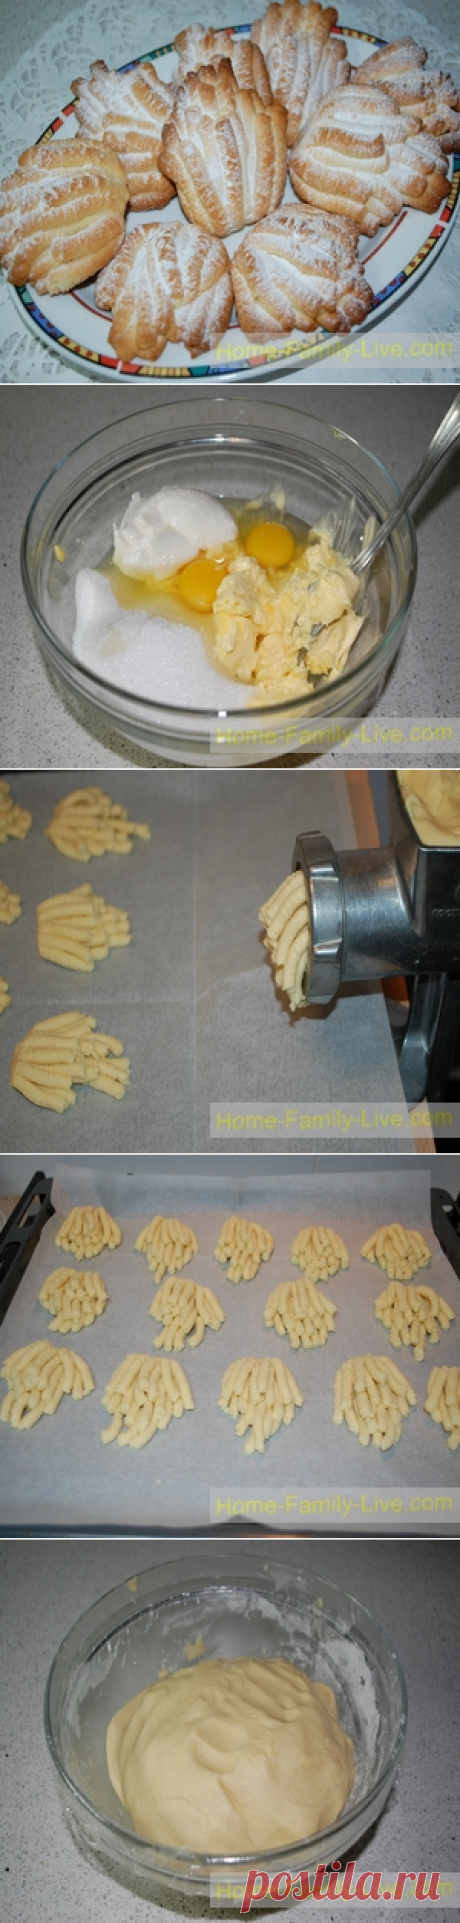 Печенье Хризантема/Сайт с пошаговыми рецептами с фото для тех кто любит готовить